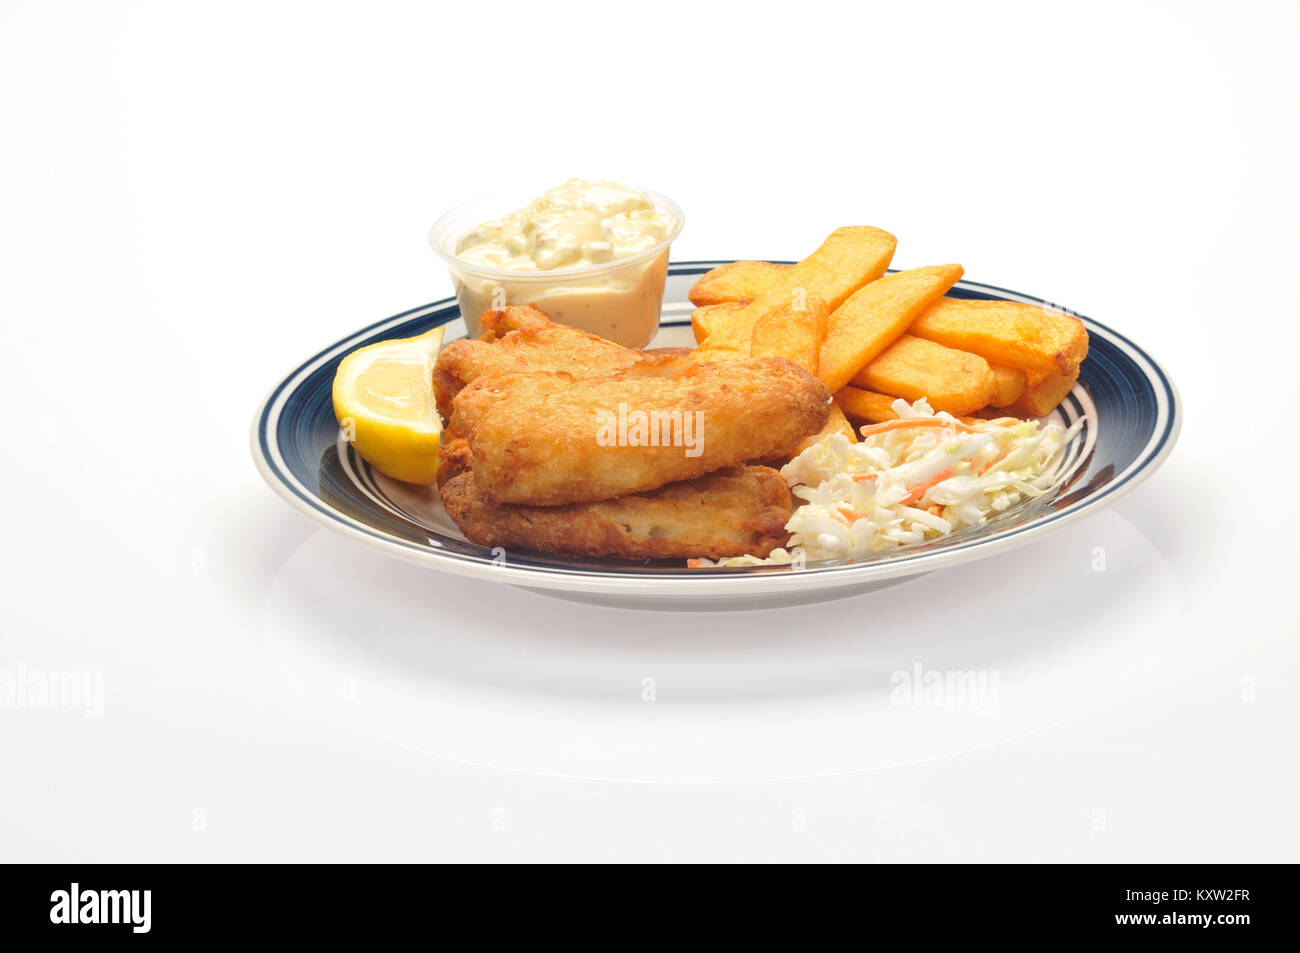 Gebratener Fisch und Chips mit einem Keil der Zitrone, Krautsalat und Sauce Tartar auf blaue und weiße Platte auf weißem Hintergrund ausschneiden Stockfoto